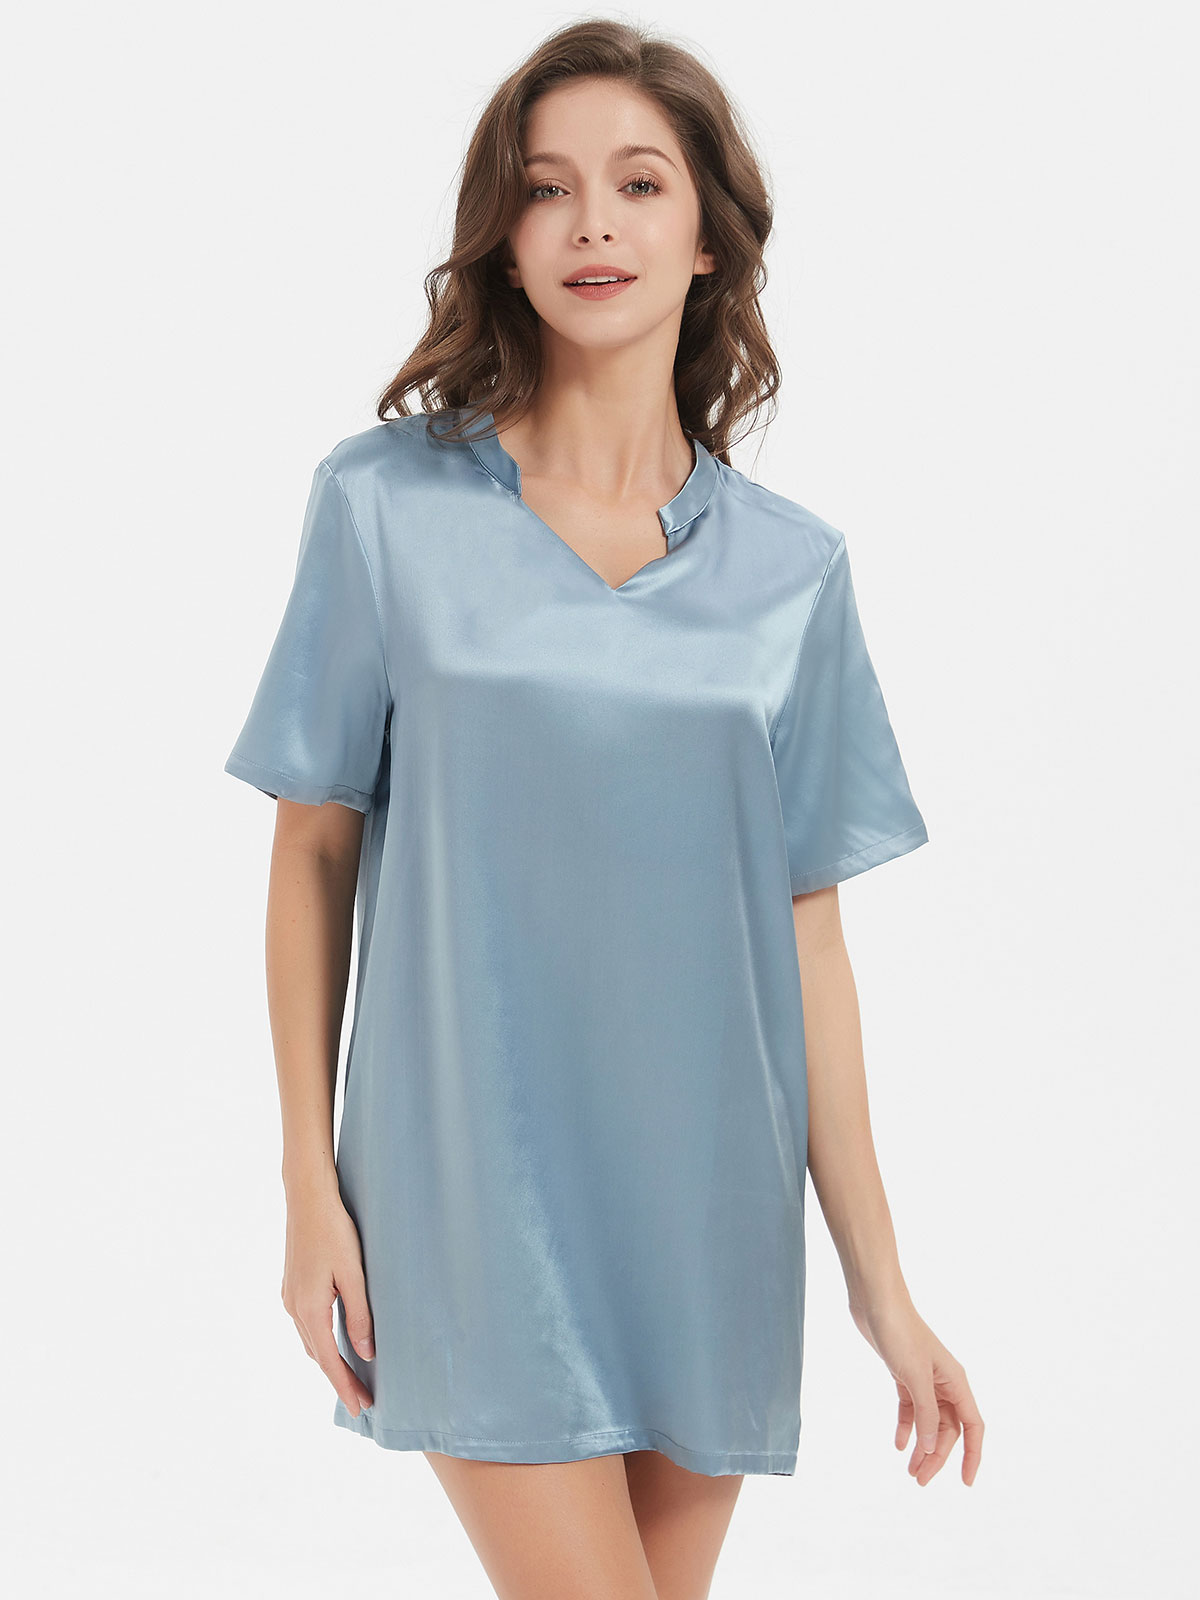 19 Momme Elegant Silk Nightwear With Short Sleeves